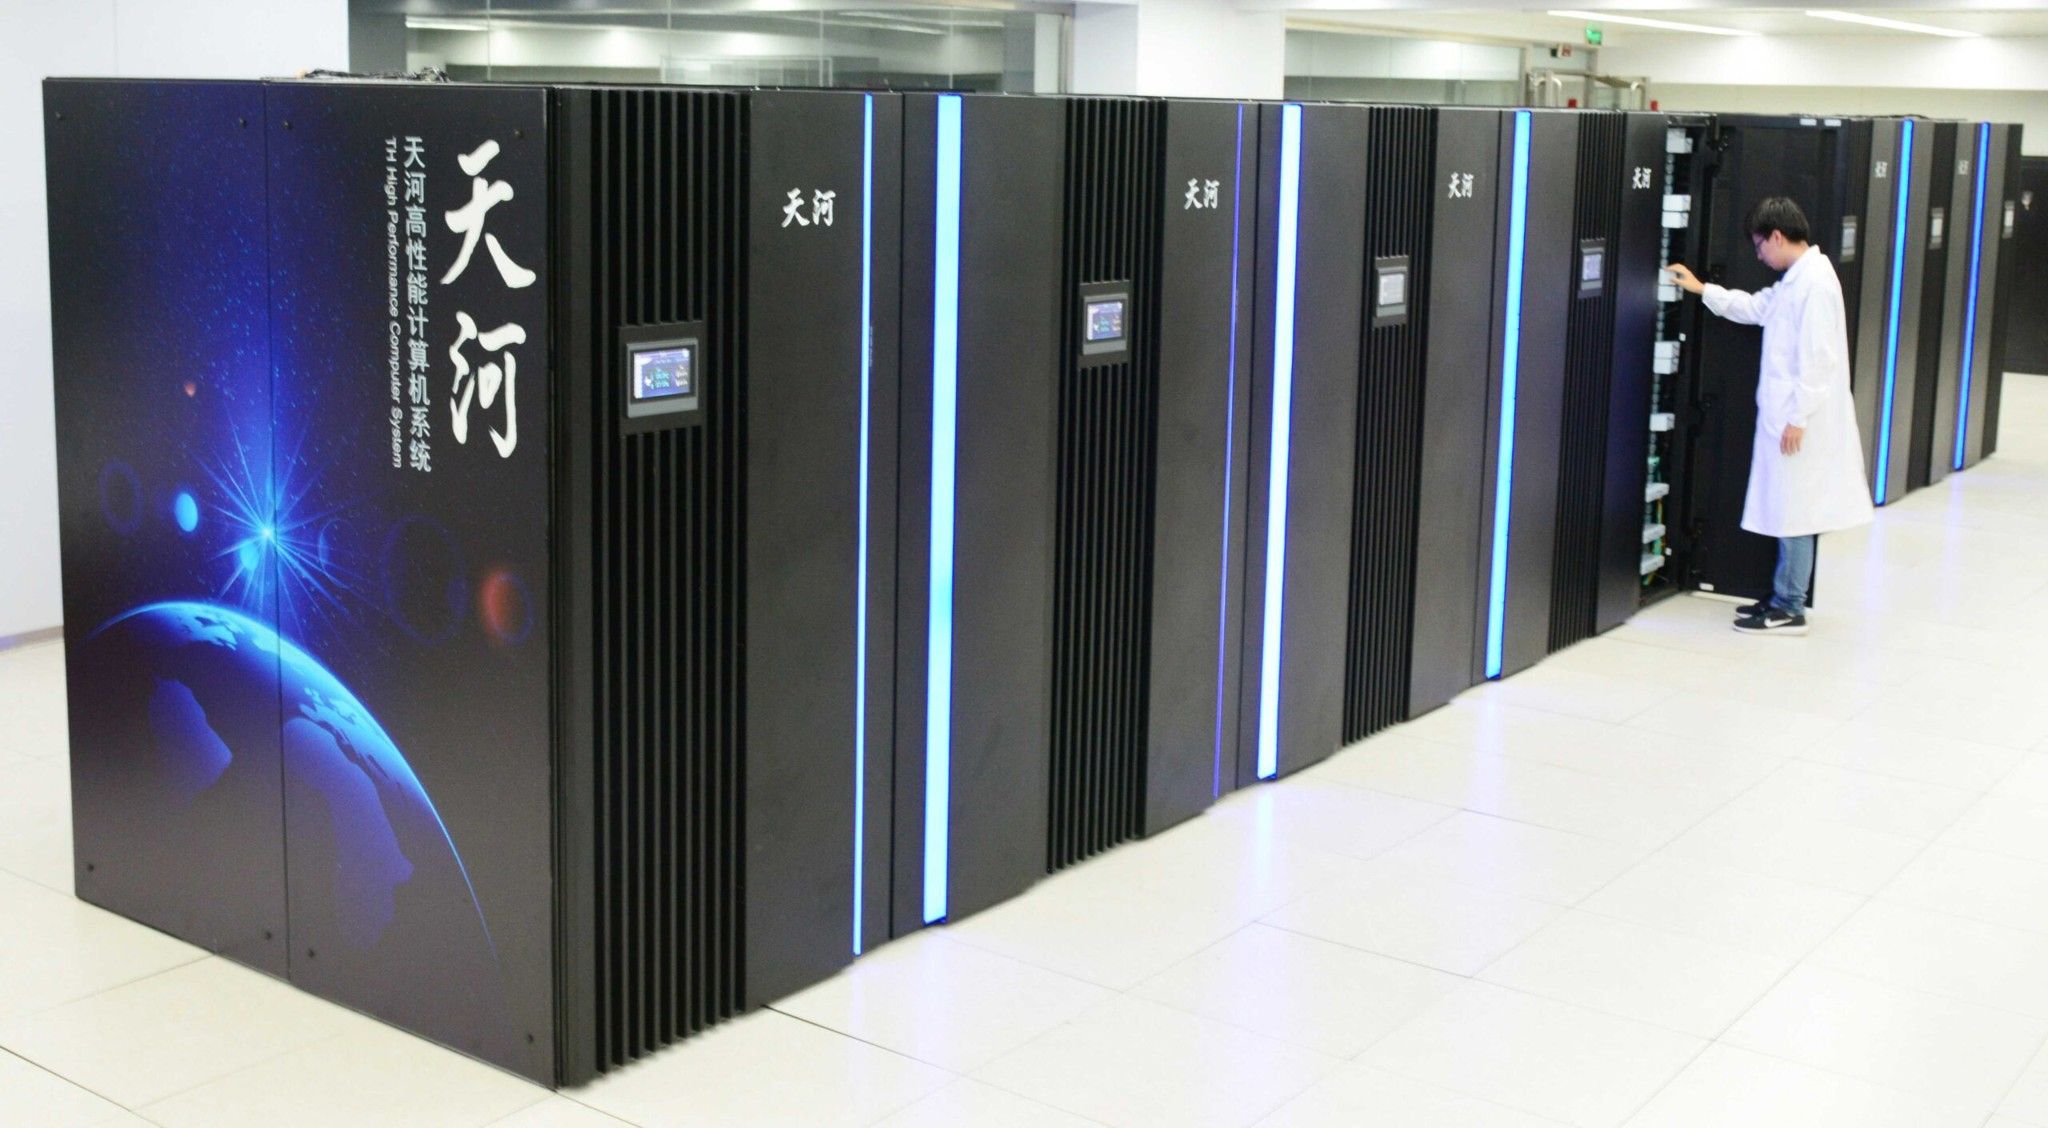 Phát hiện Trung Quốc “gian lận” khi công bố sức mạnh của loạt siêu máy tính